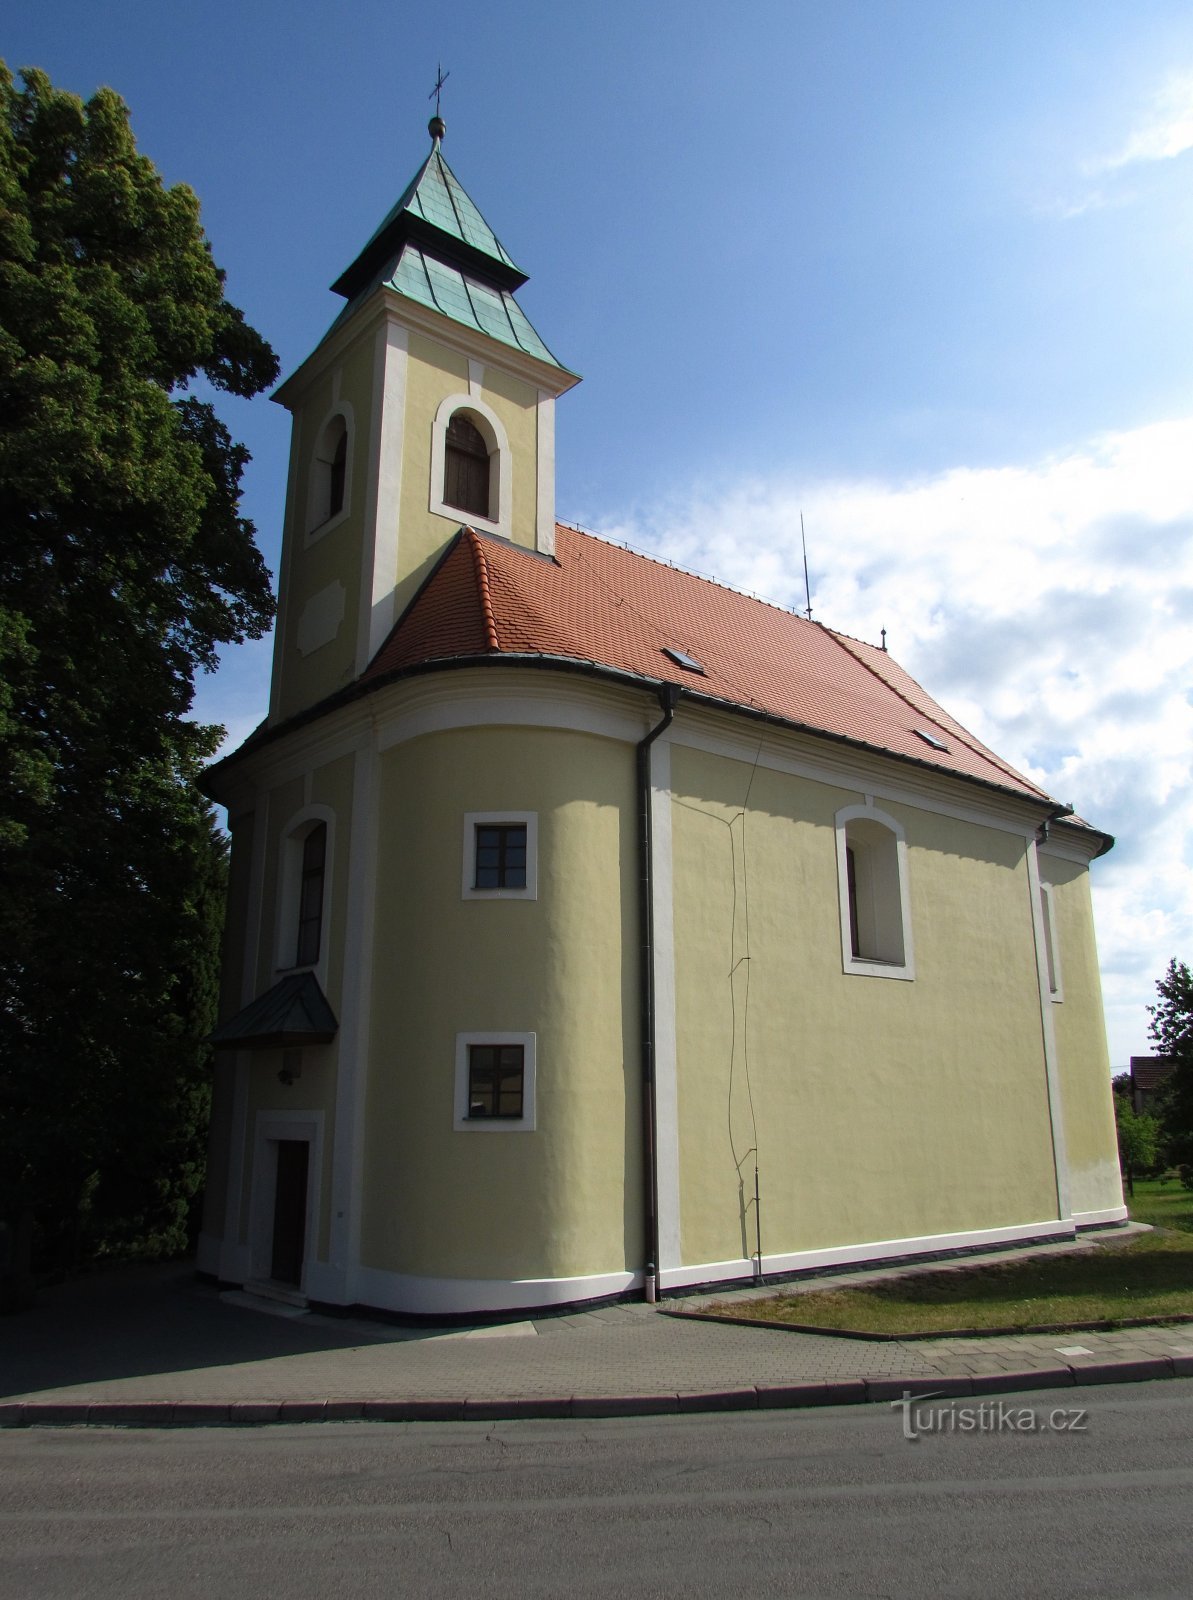 Bukovinka - Kirche der Himmelfahrt der Jungfrau Maria